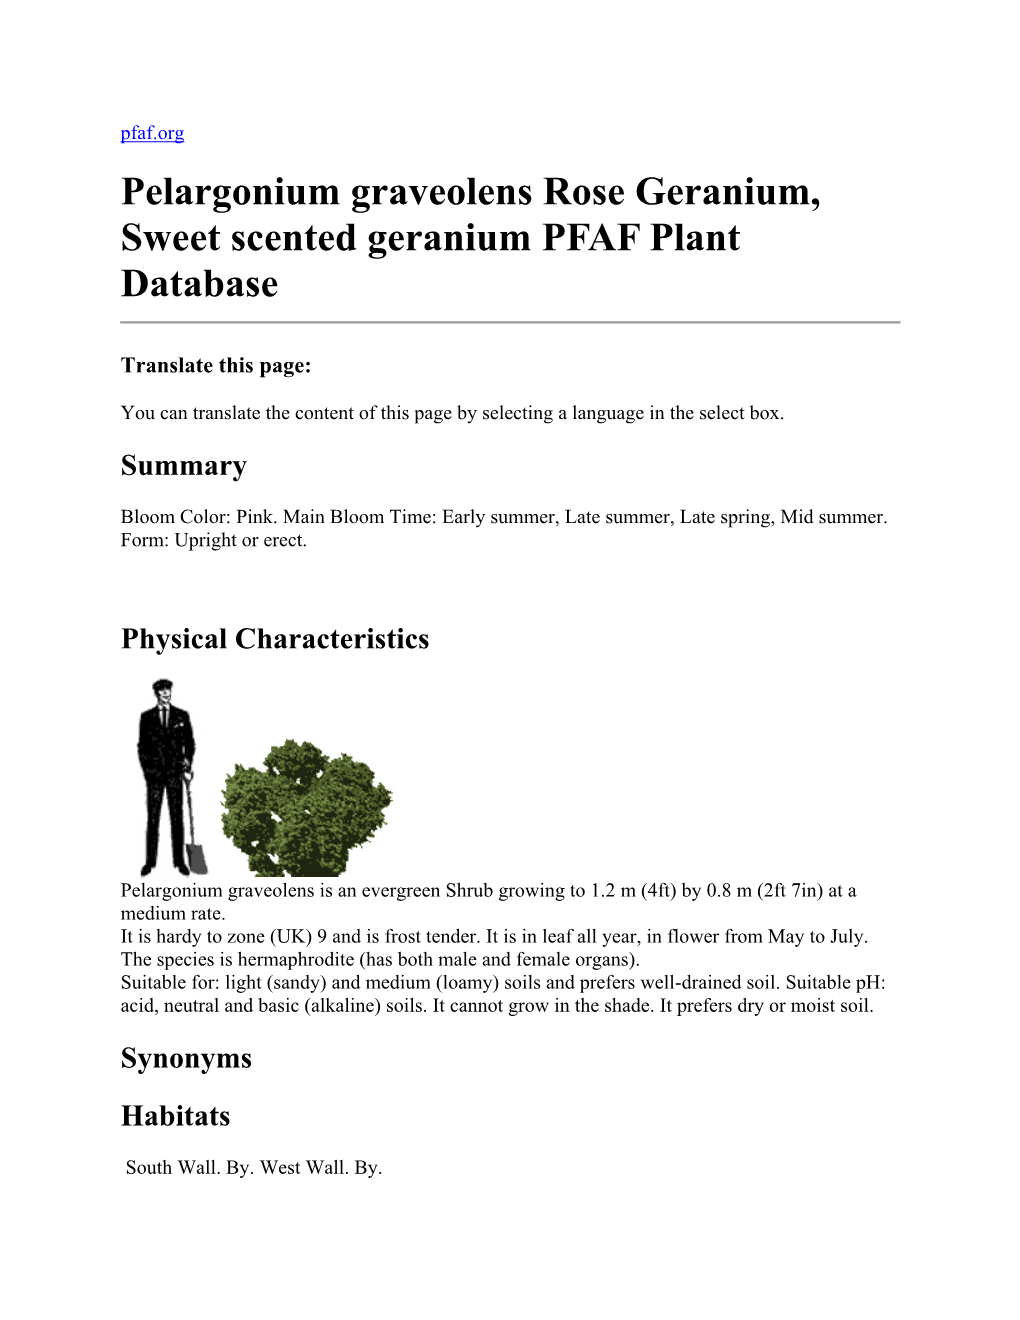 Pelargonium Graveolens Rose Geranium, Sweet Scented Geranium PFAF Plant Database